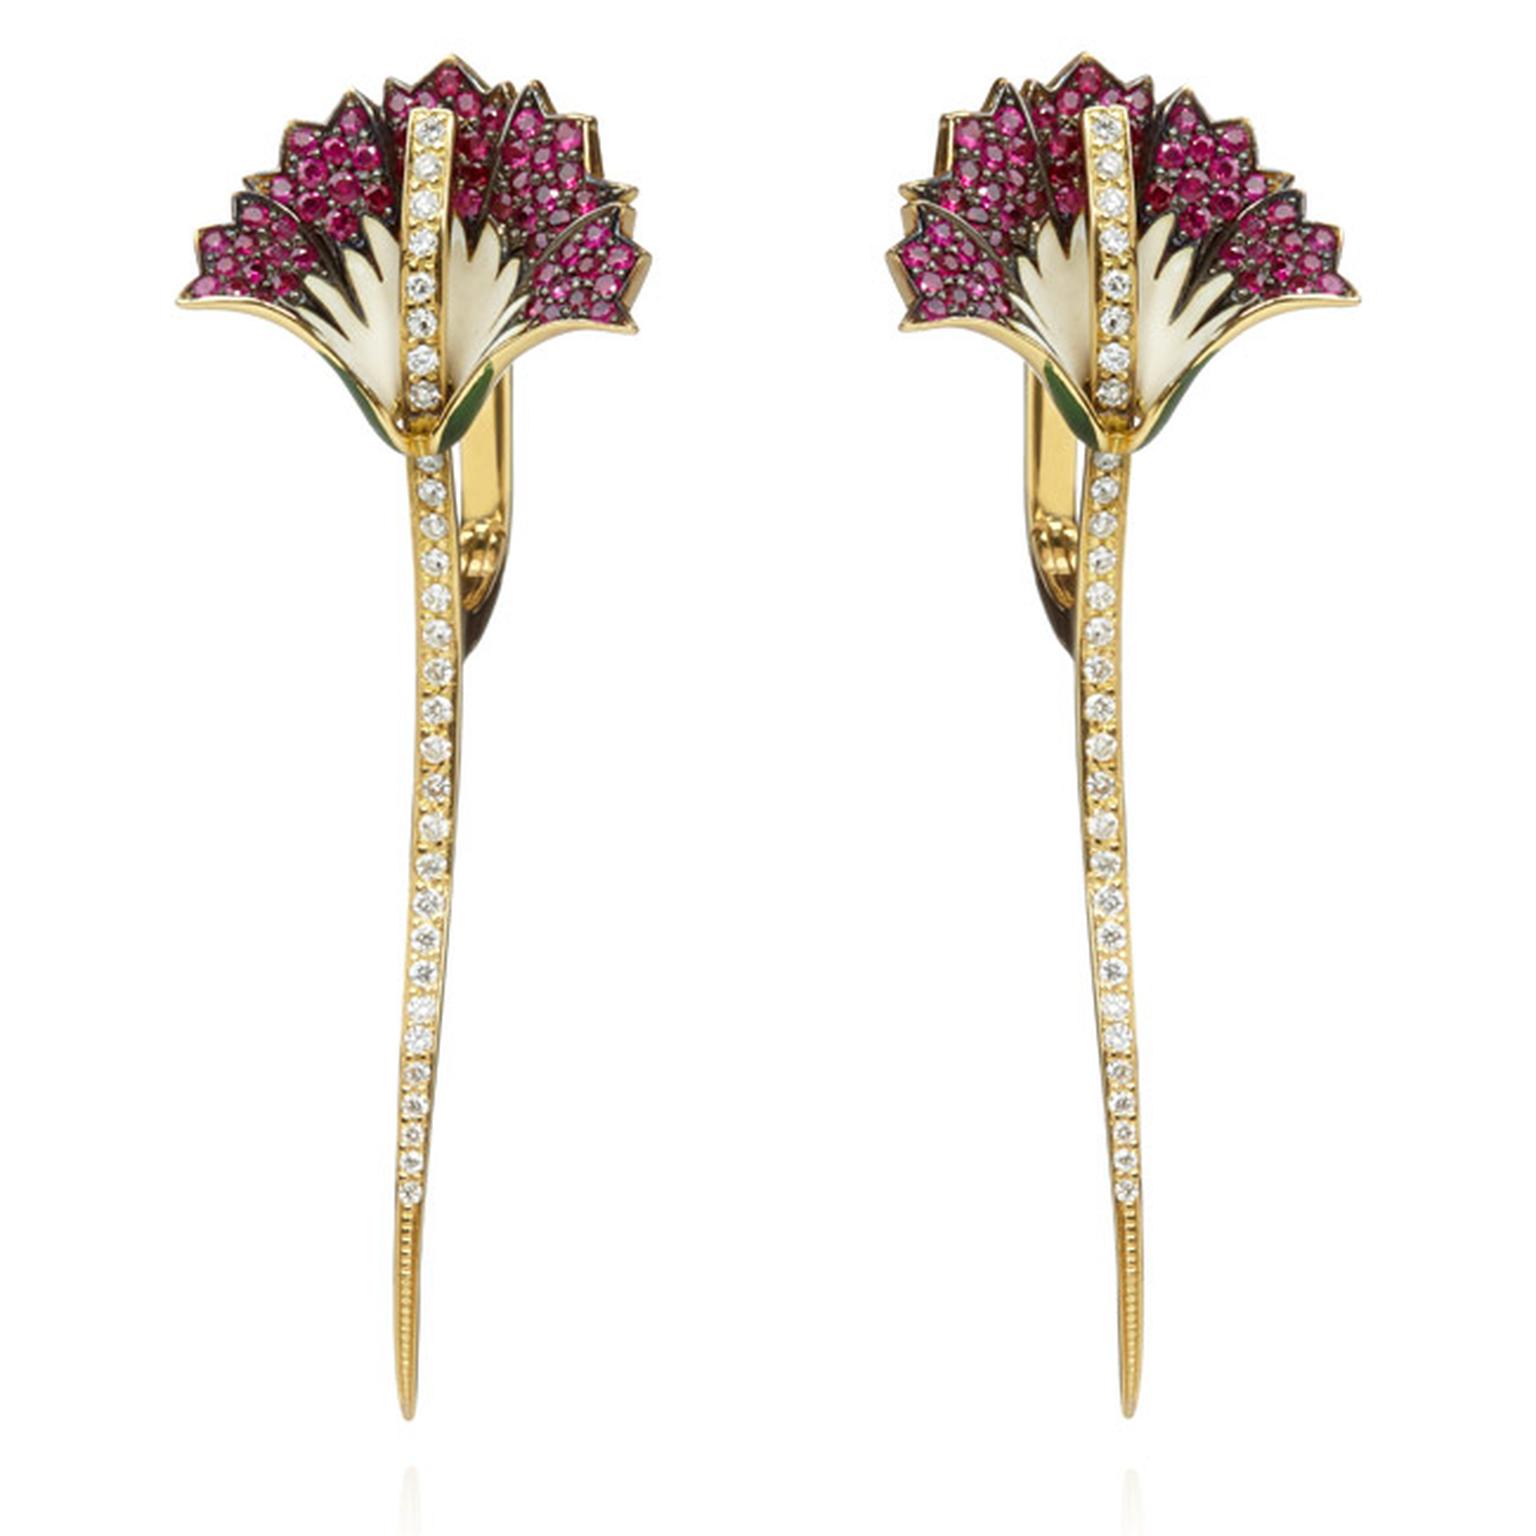 Annoushka-Carnation-Earrings-Main